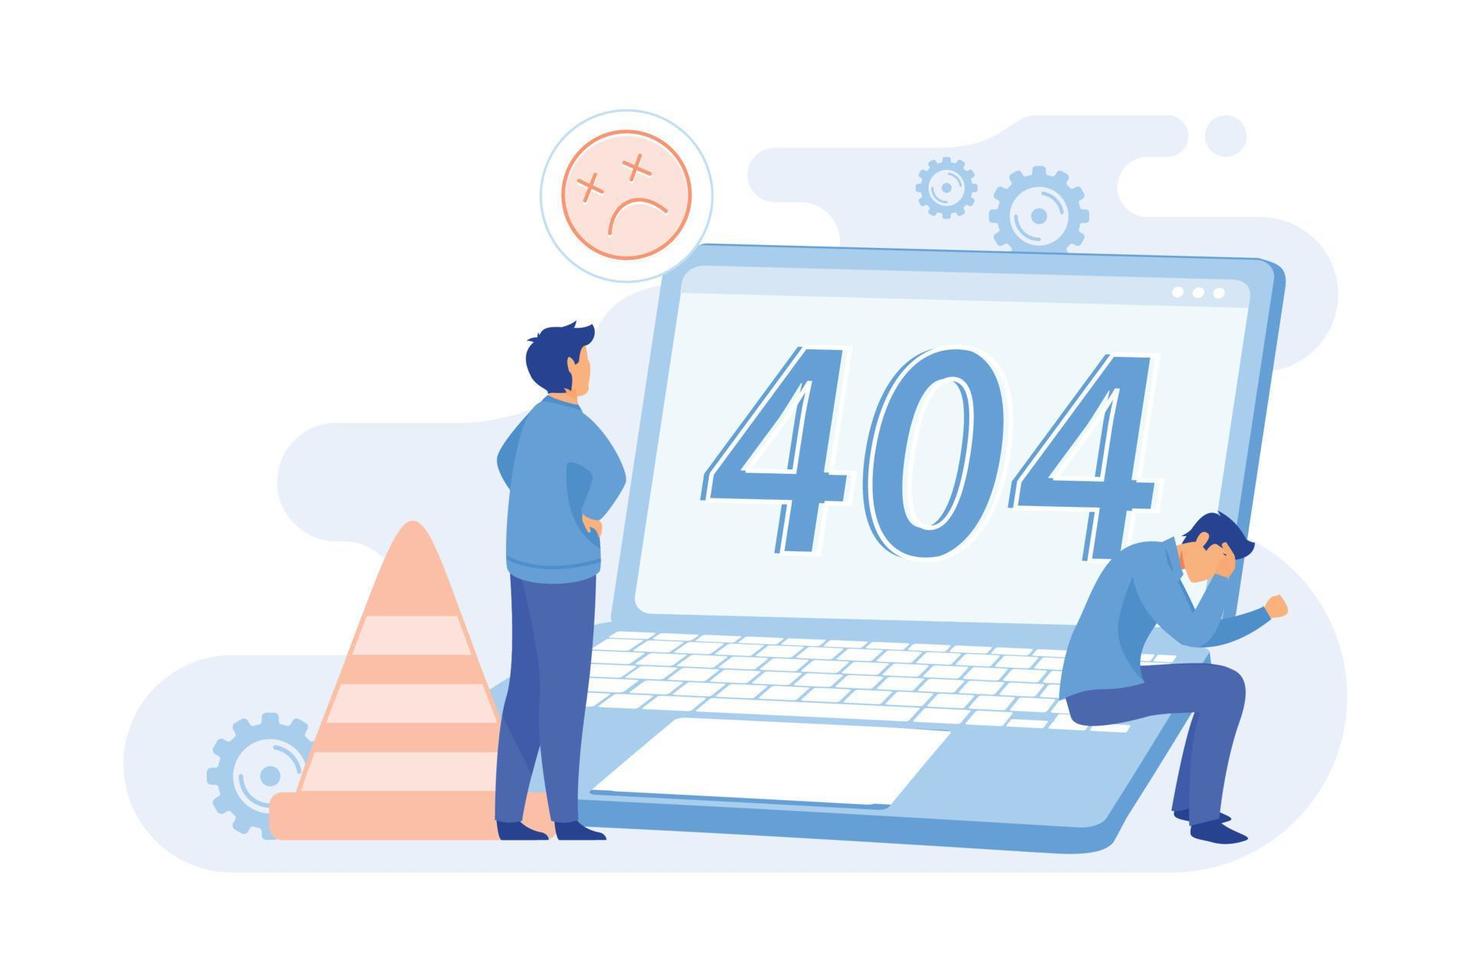 404 error concepto abstracto 404 plantilla, falla de descarga del navegador, página no encontrada, solicitud del servidor, no disponible, problema de comunicación del sitio web diseño plano ilustración moderna vector